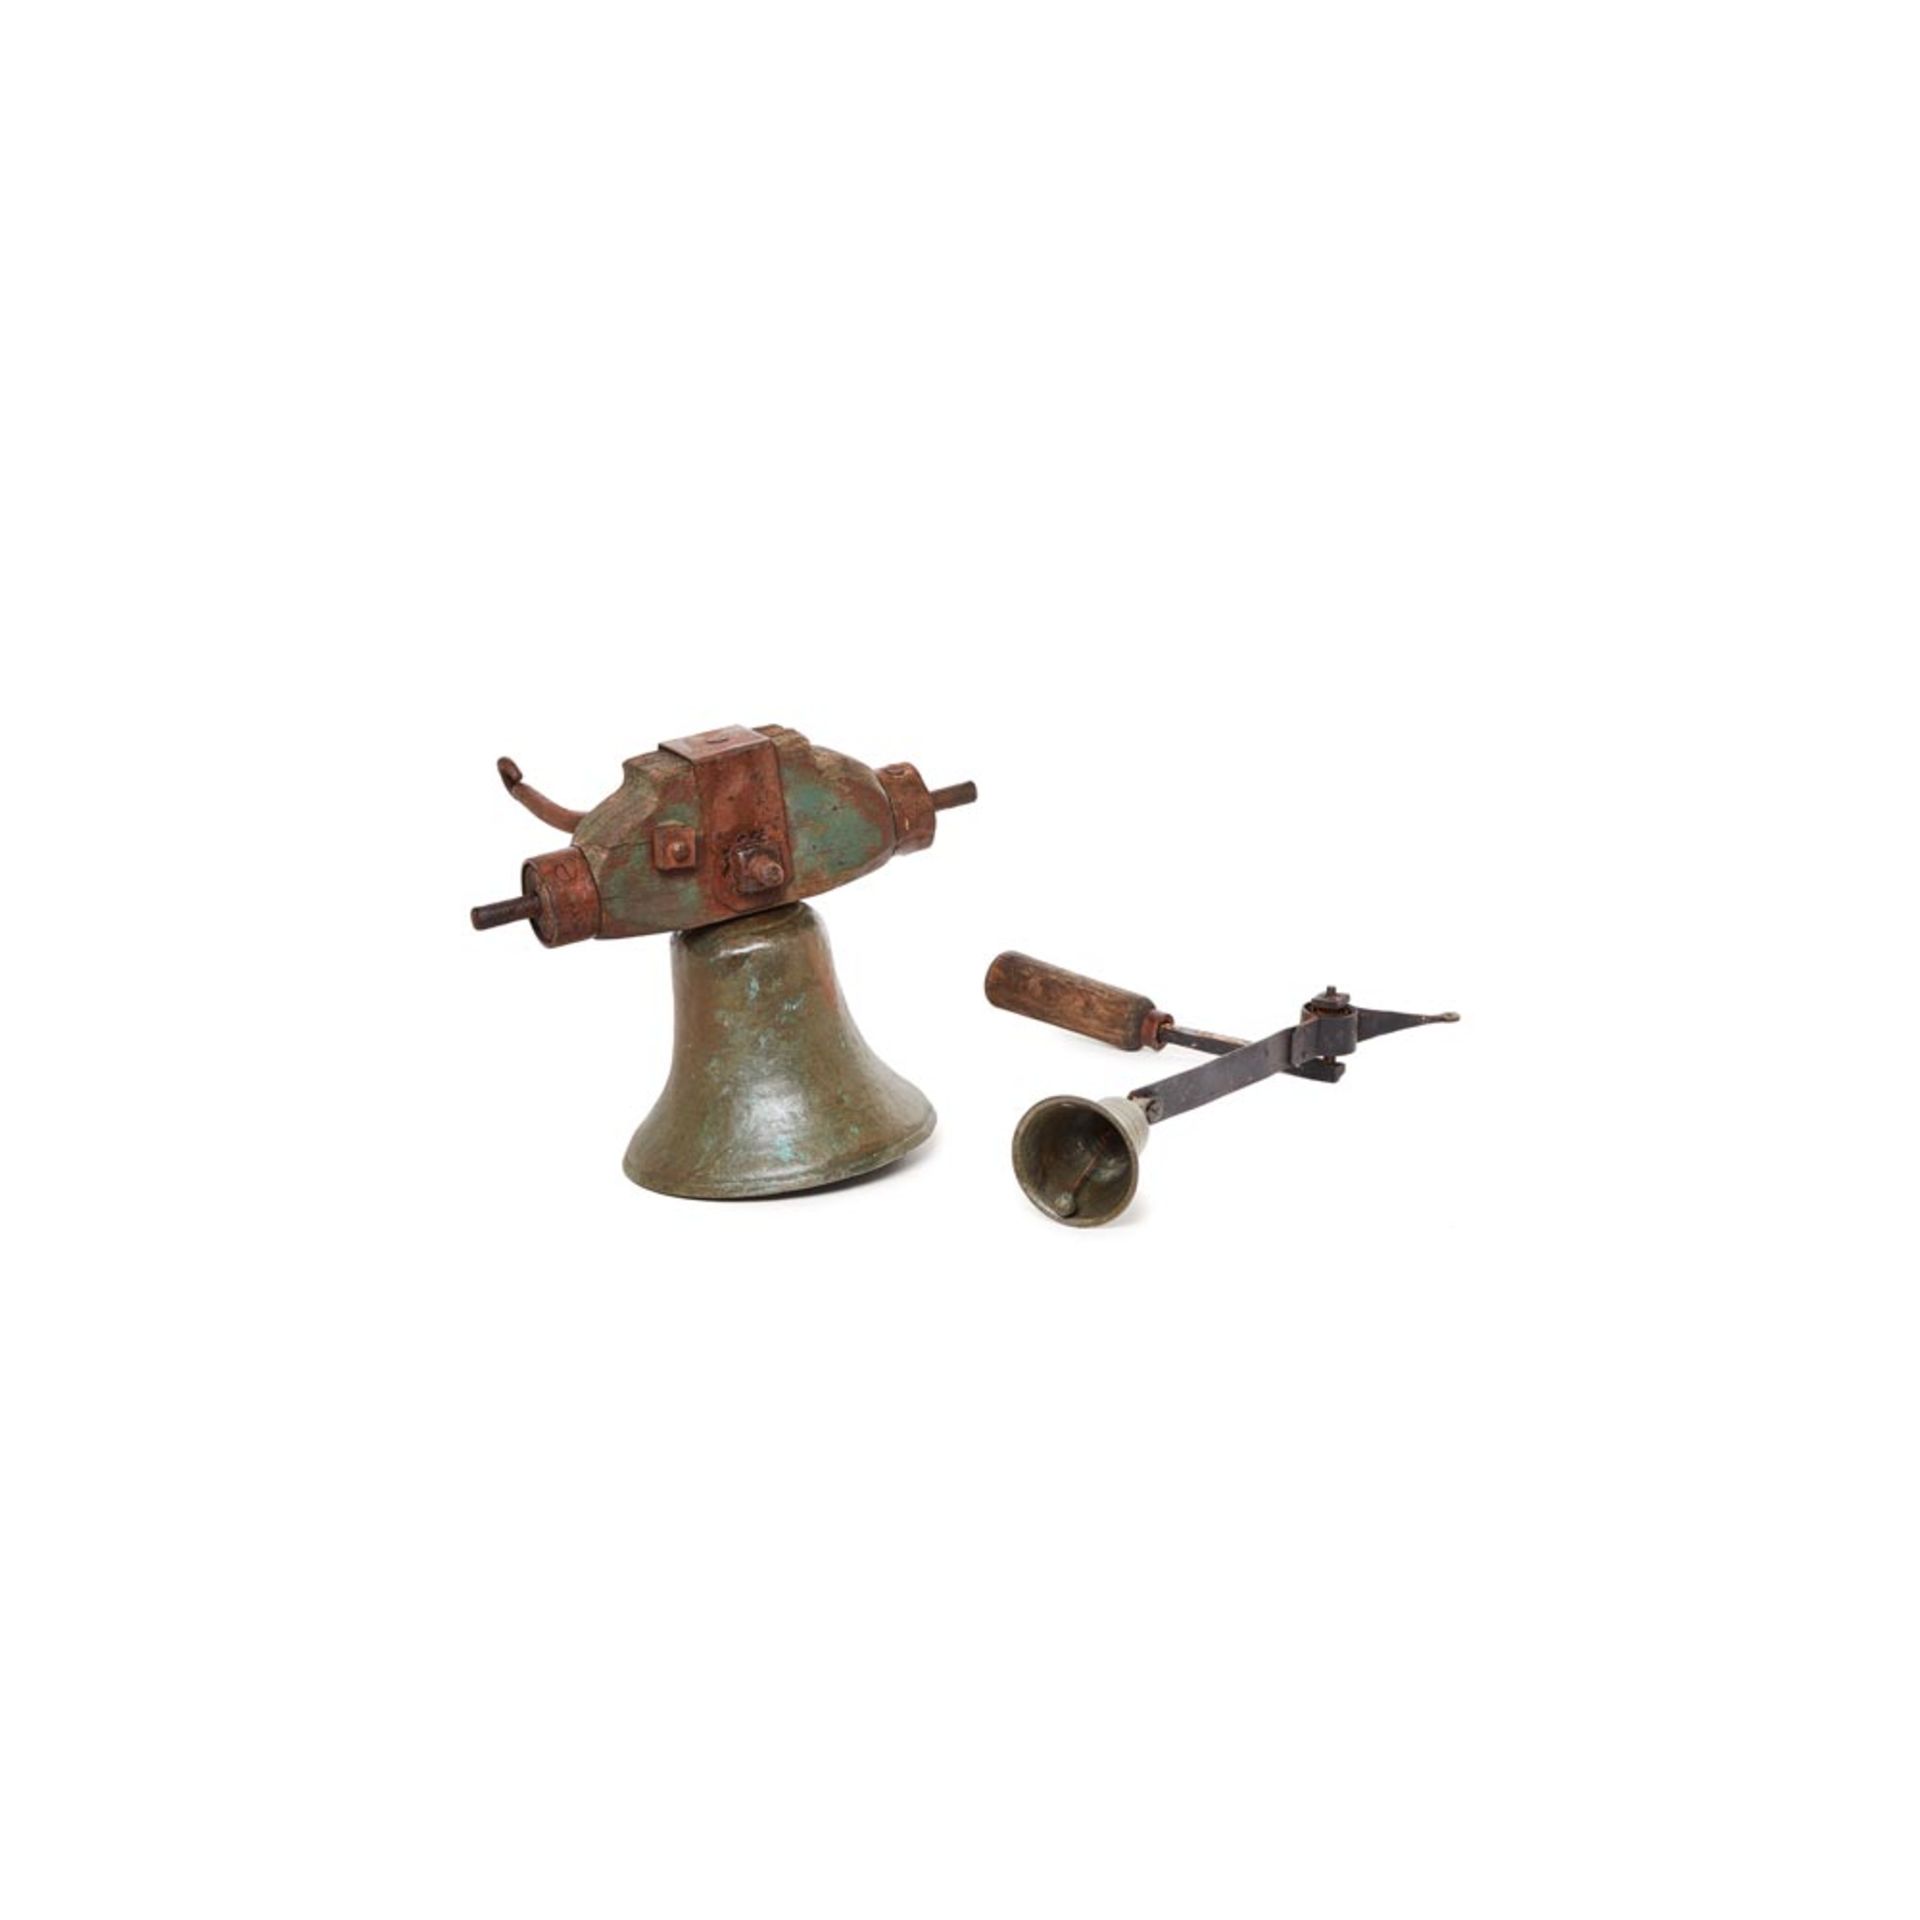 Lote de dos campanas en bronce con soporte en madera y hierro, s.XIX. Longs.: 24 y 34 cm. Presenta